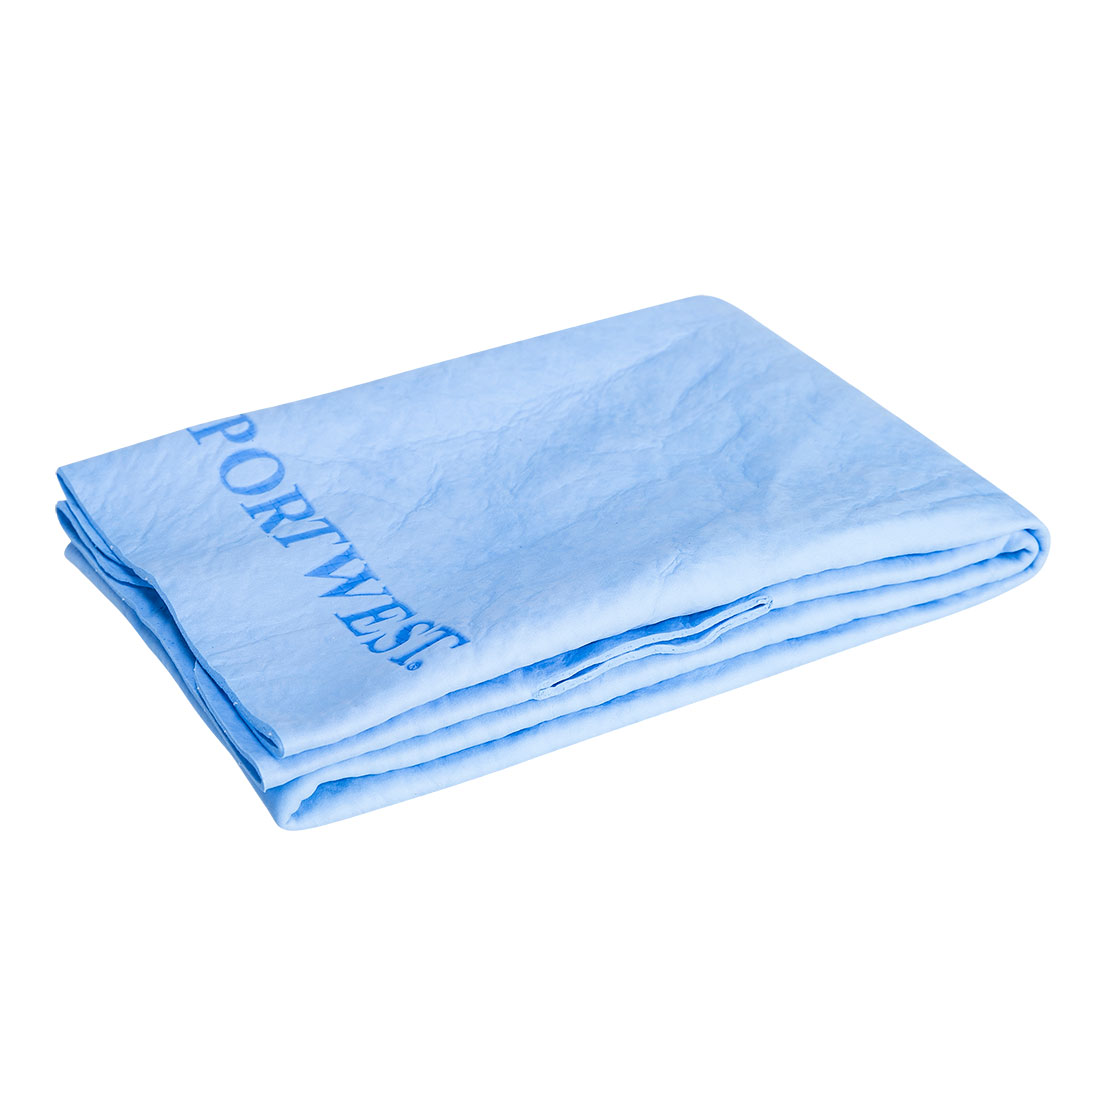 Portwest CV06 - Cooling Towel